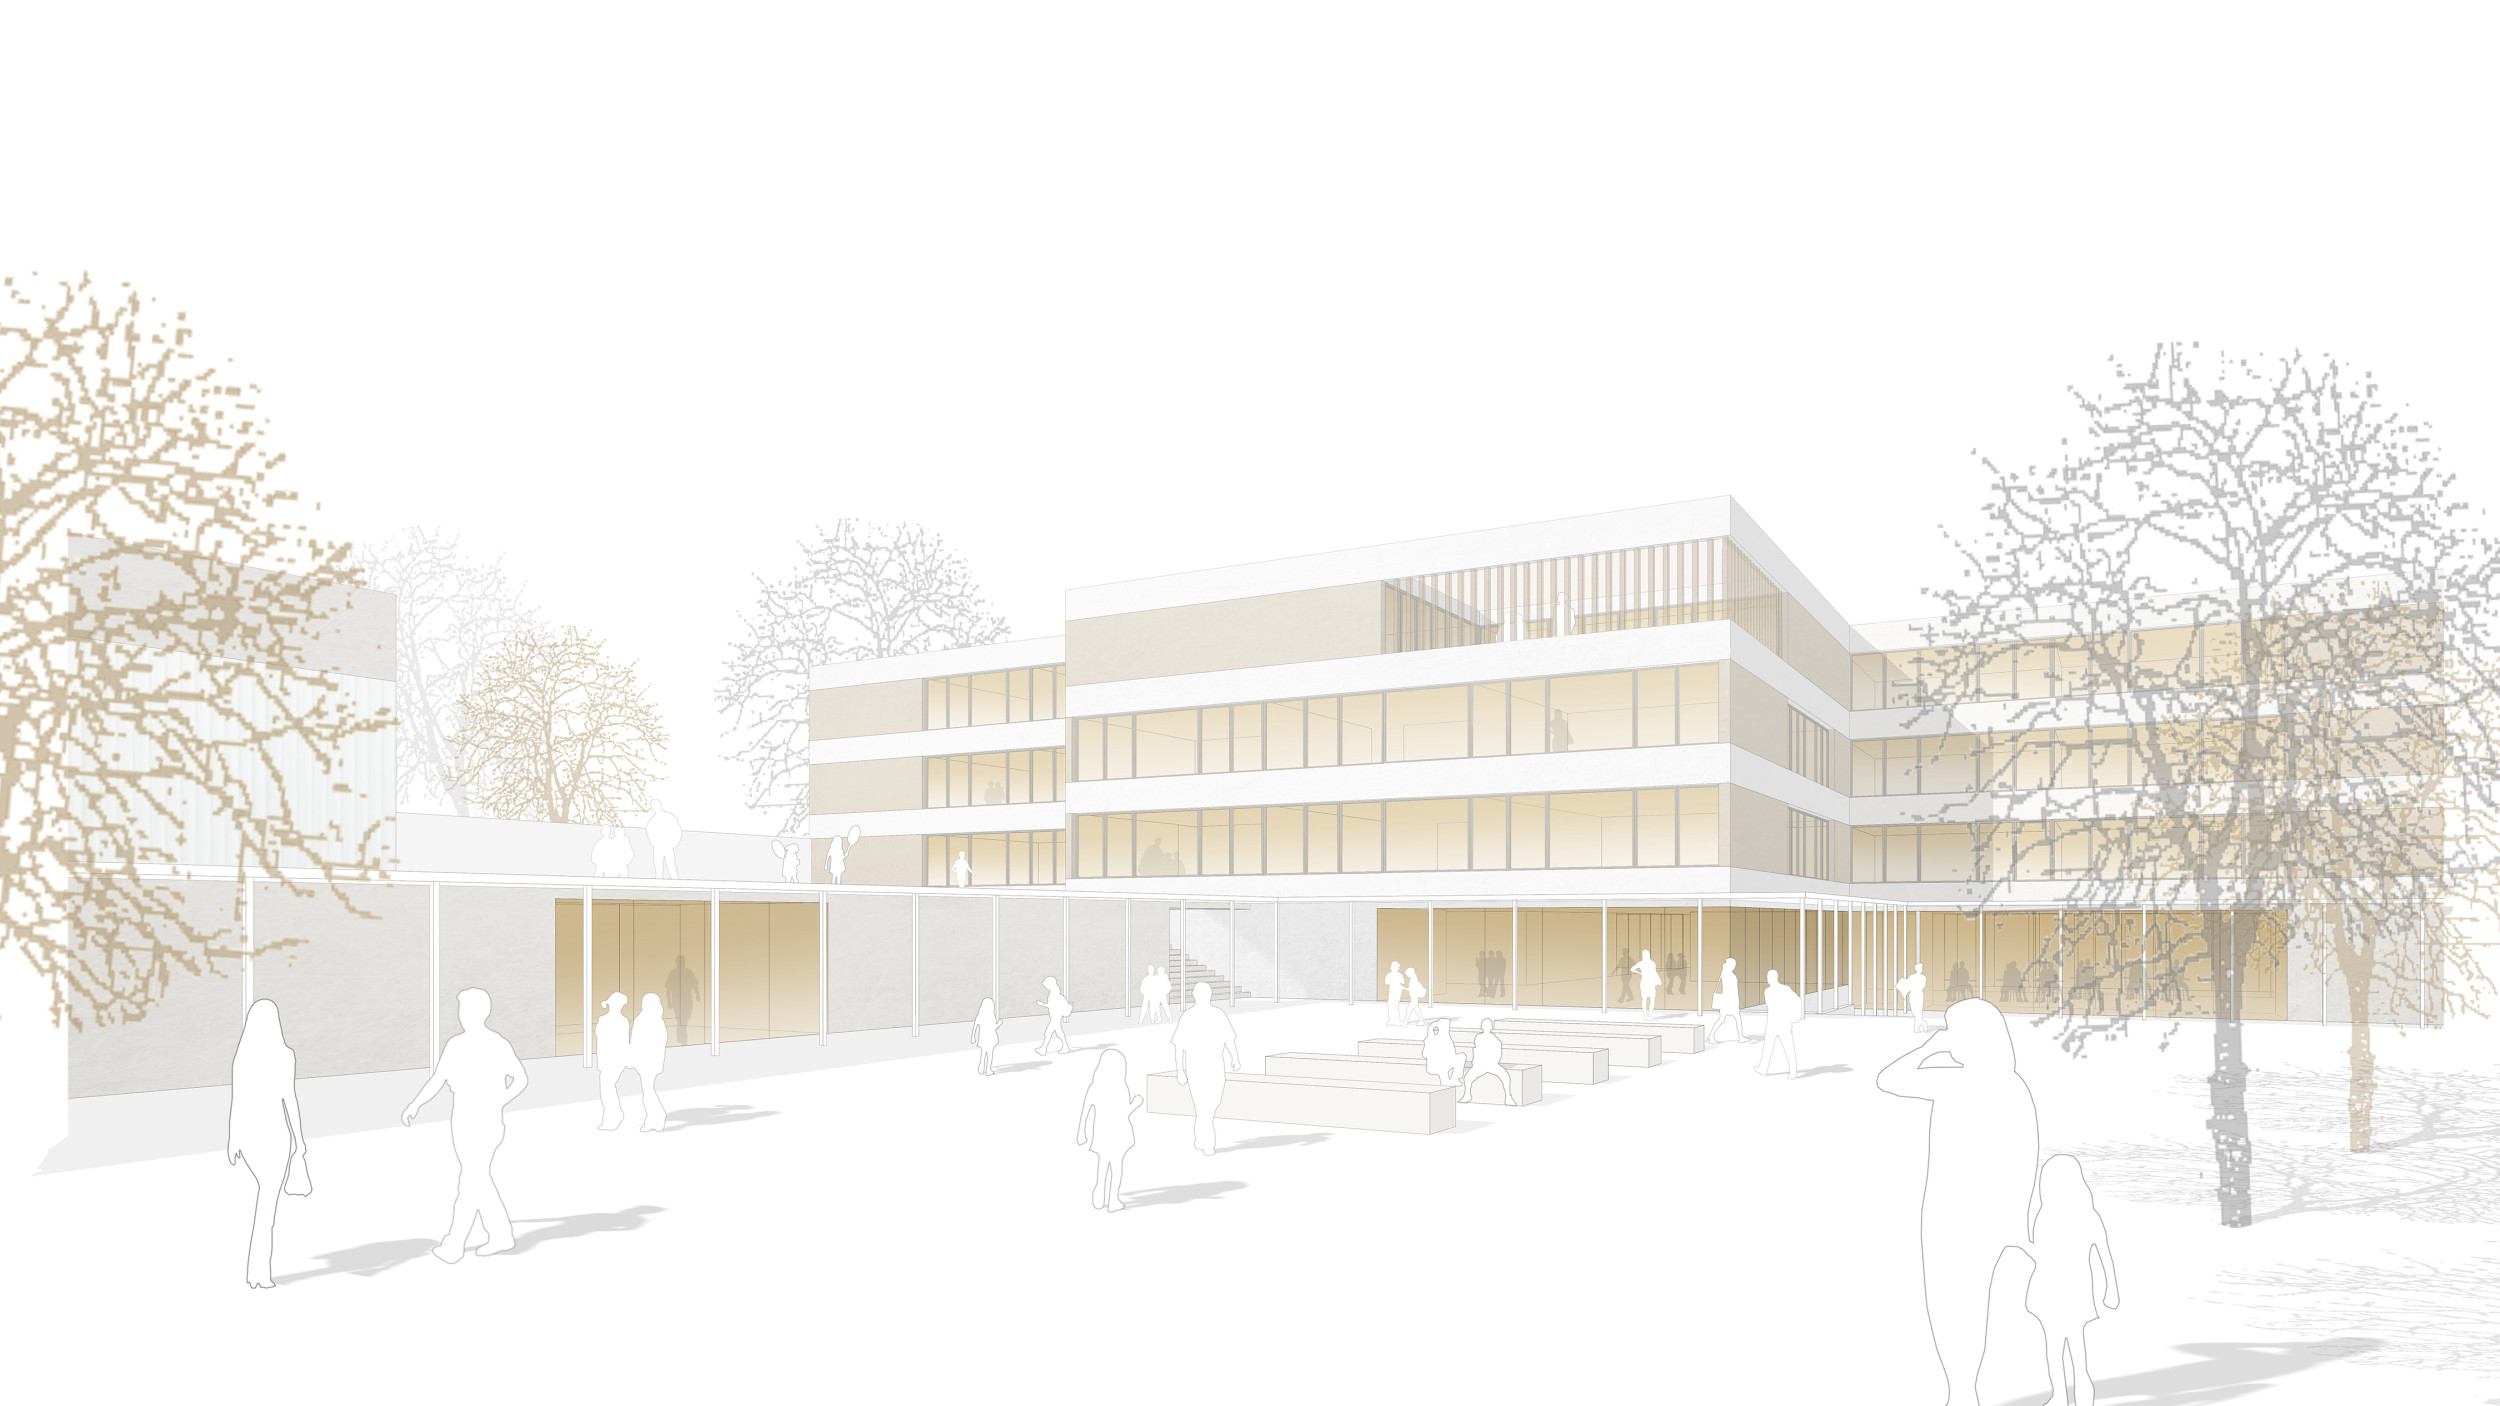 Visualisierung vom viergeschossigen Schulgebäude mit dem bespielten Schulhof im Vordergrund.